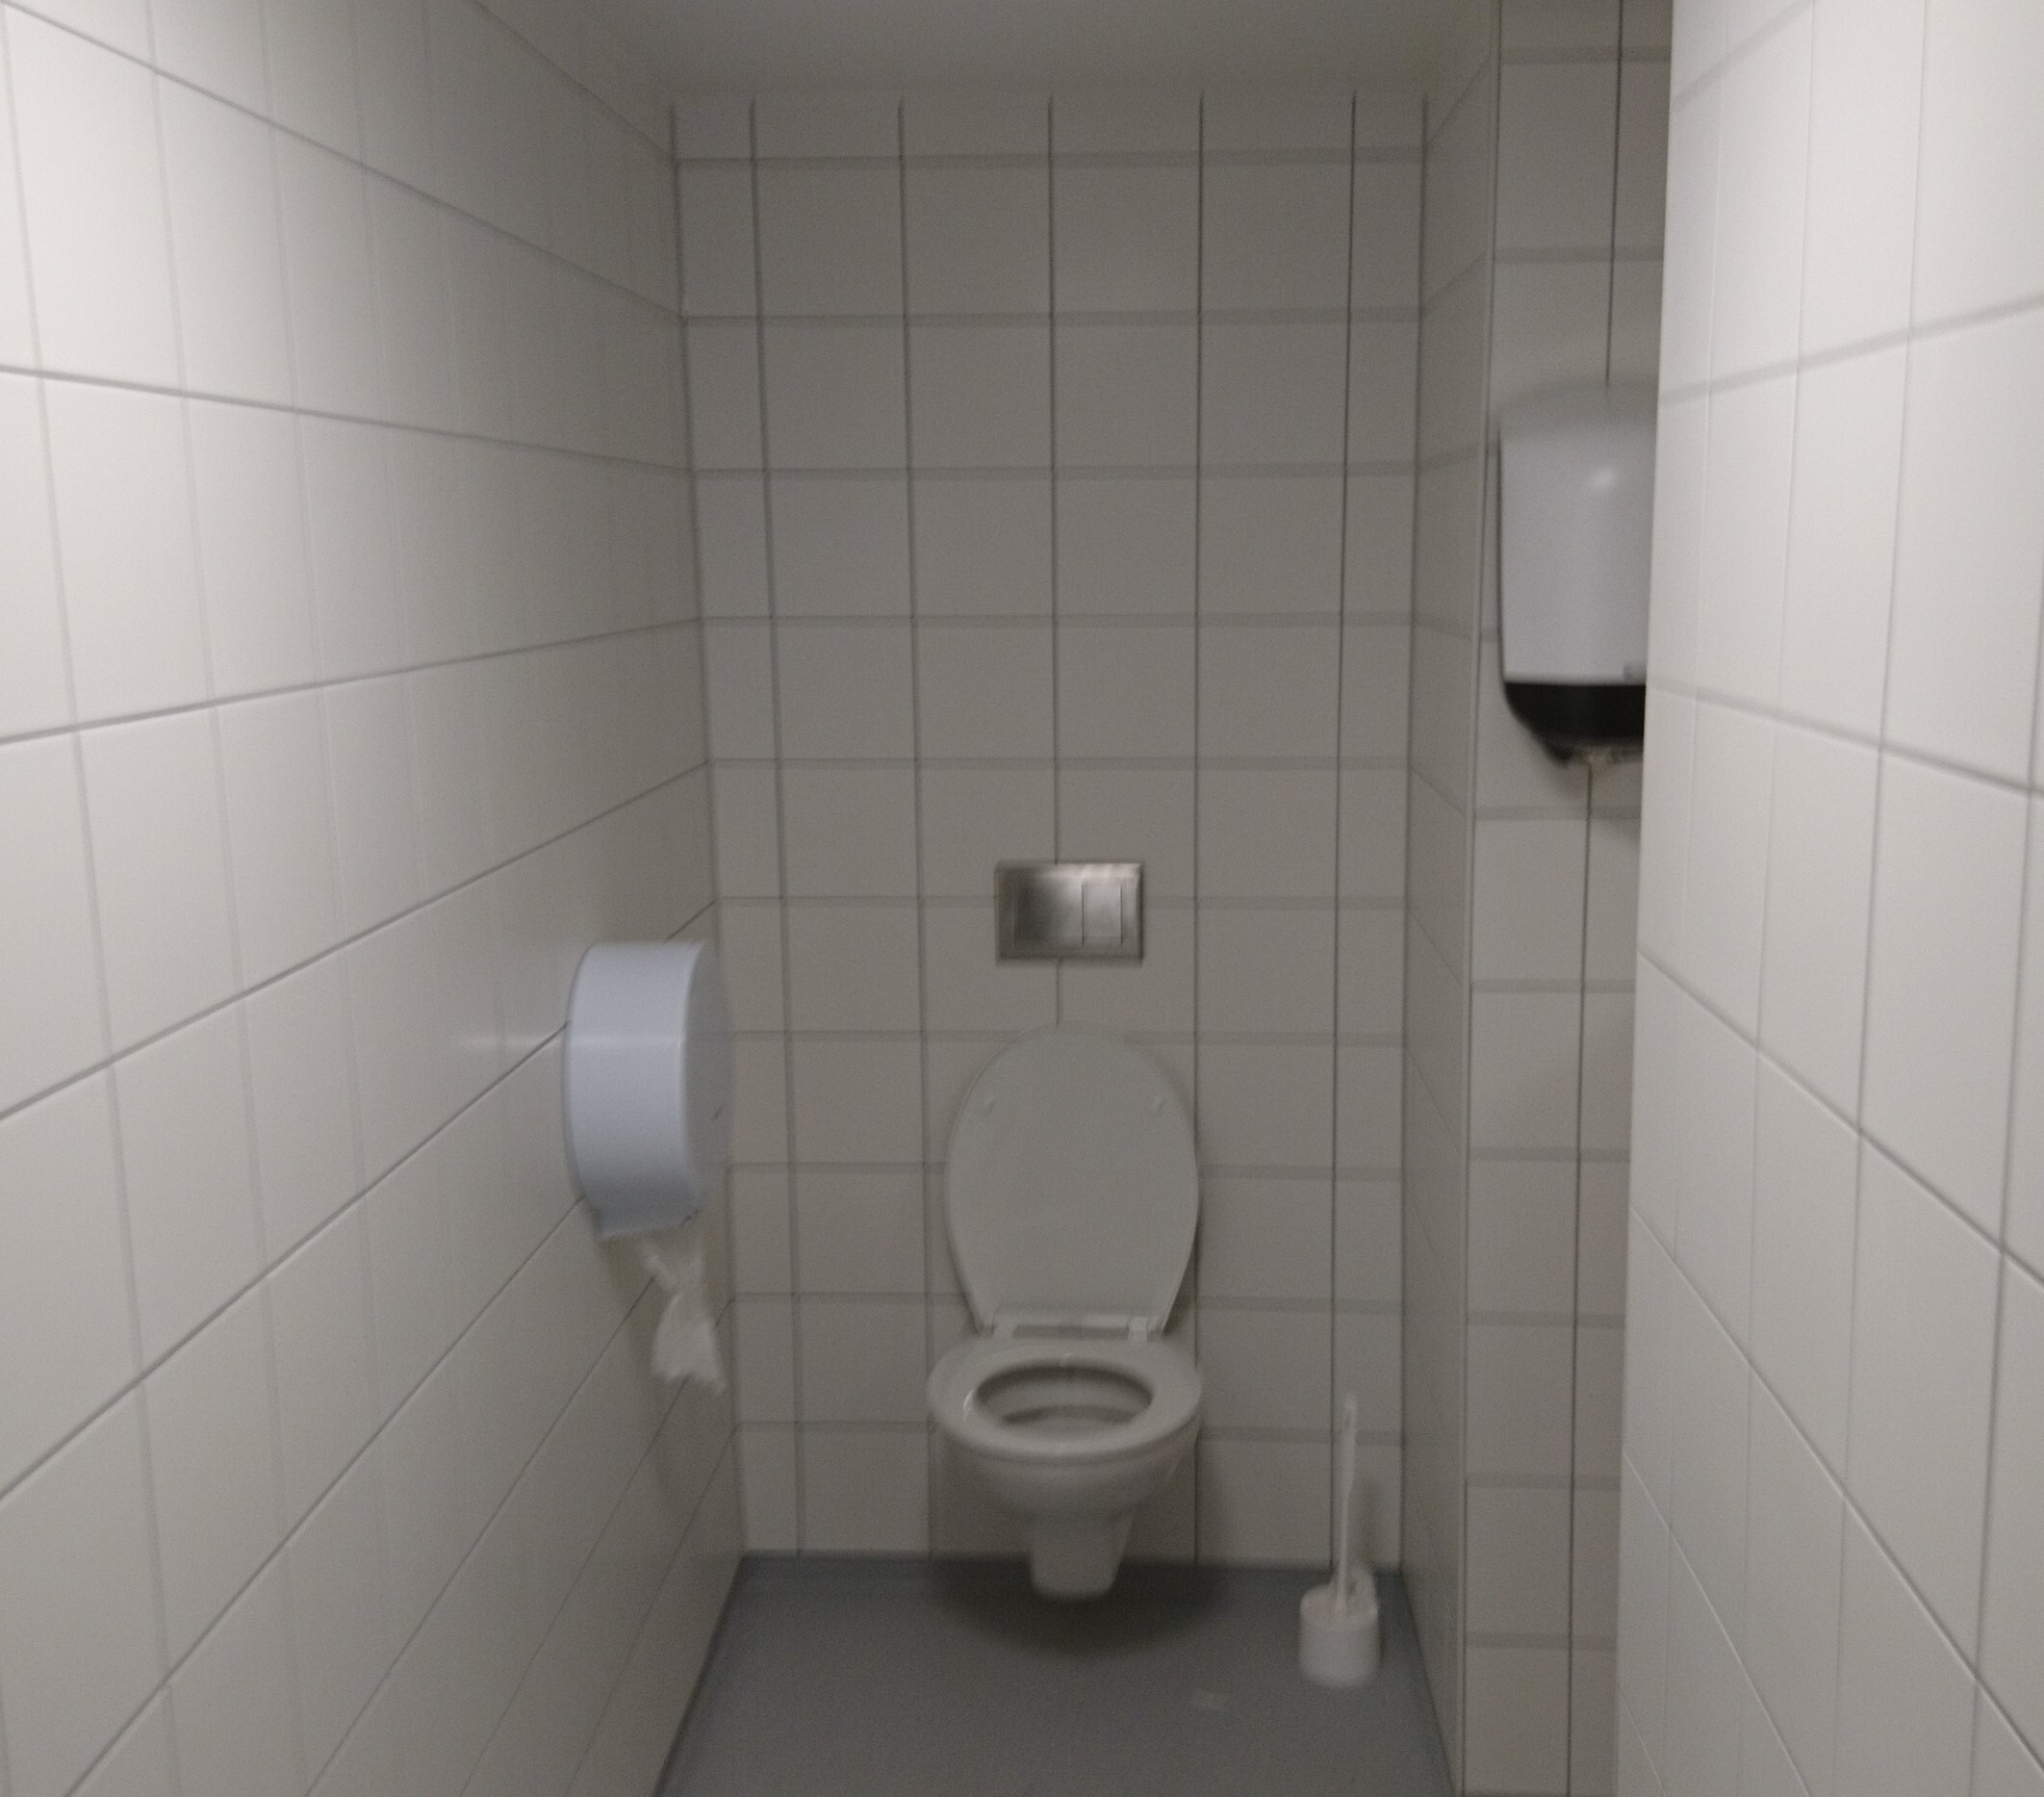 Toalett- Bredtveit